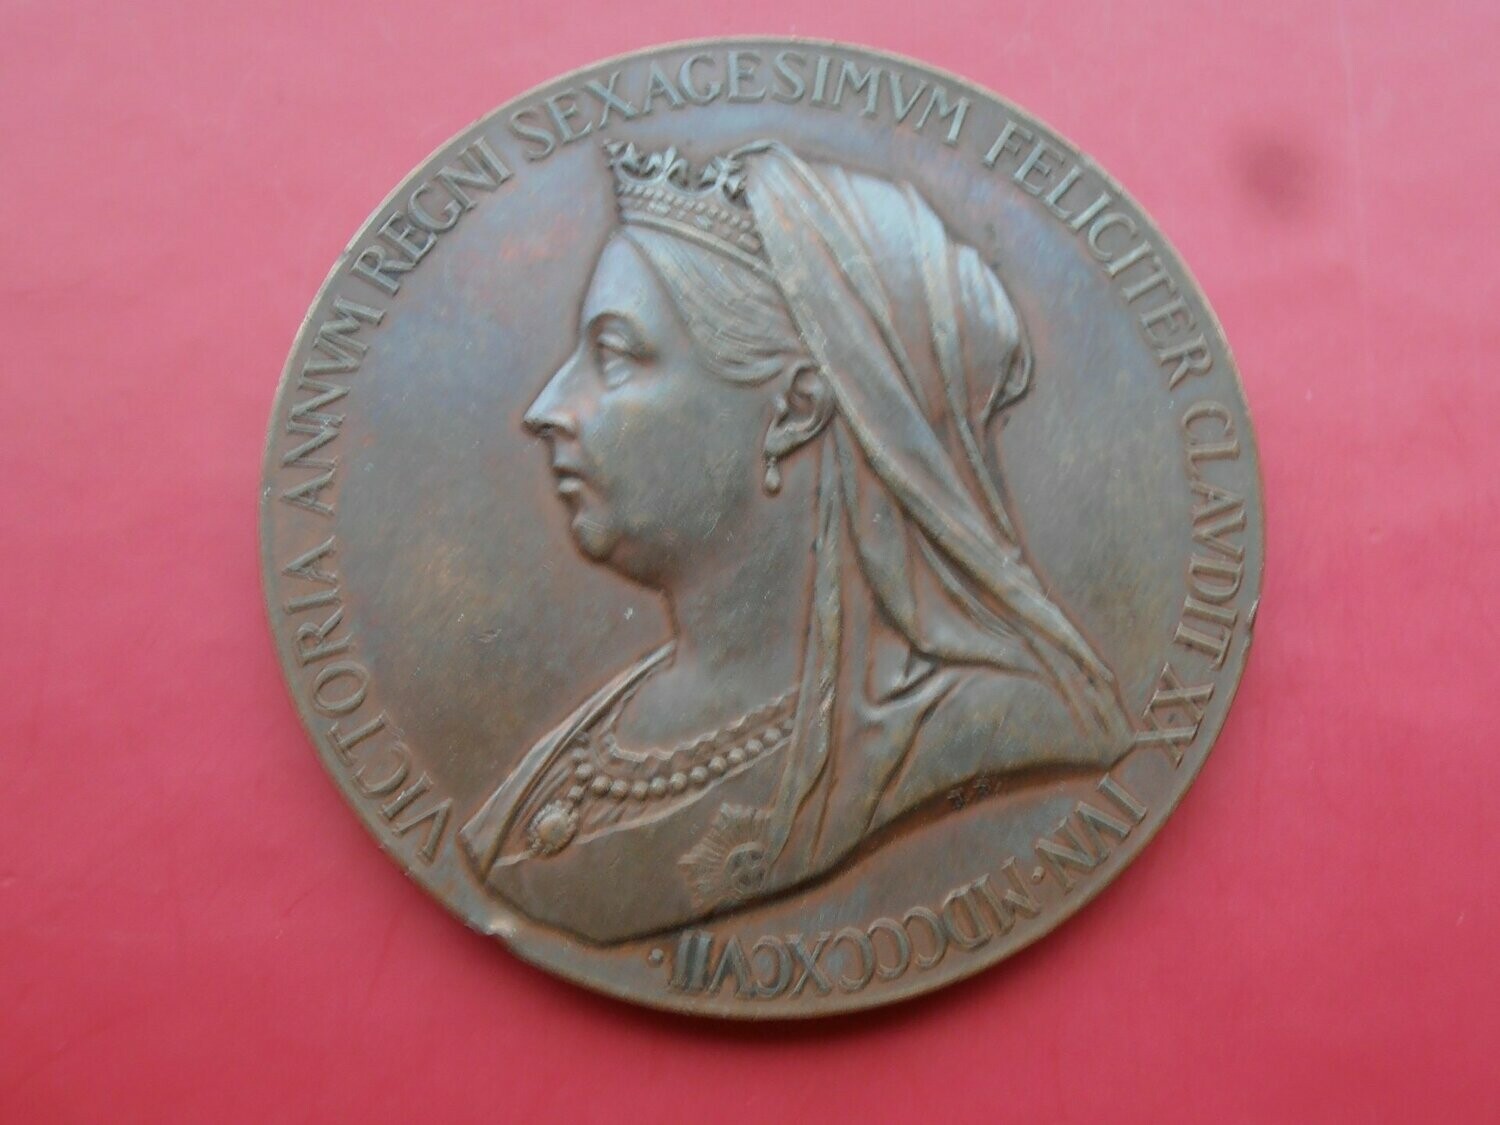 Queen Victoria Jubilee Medal - 1897 L